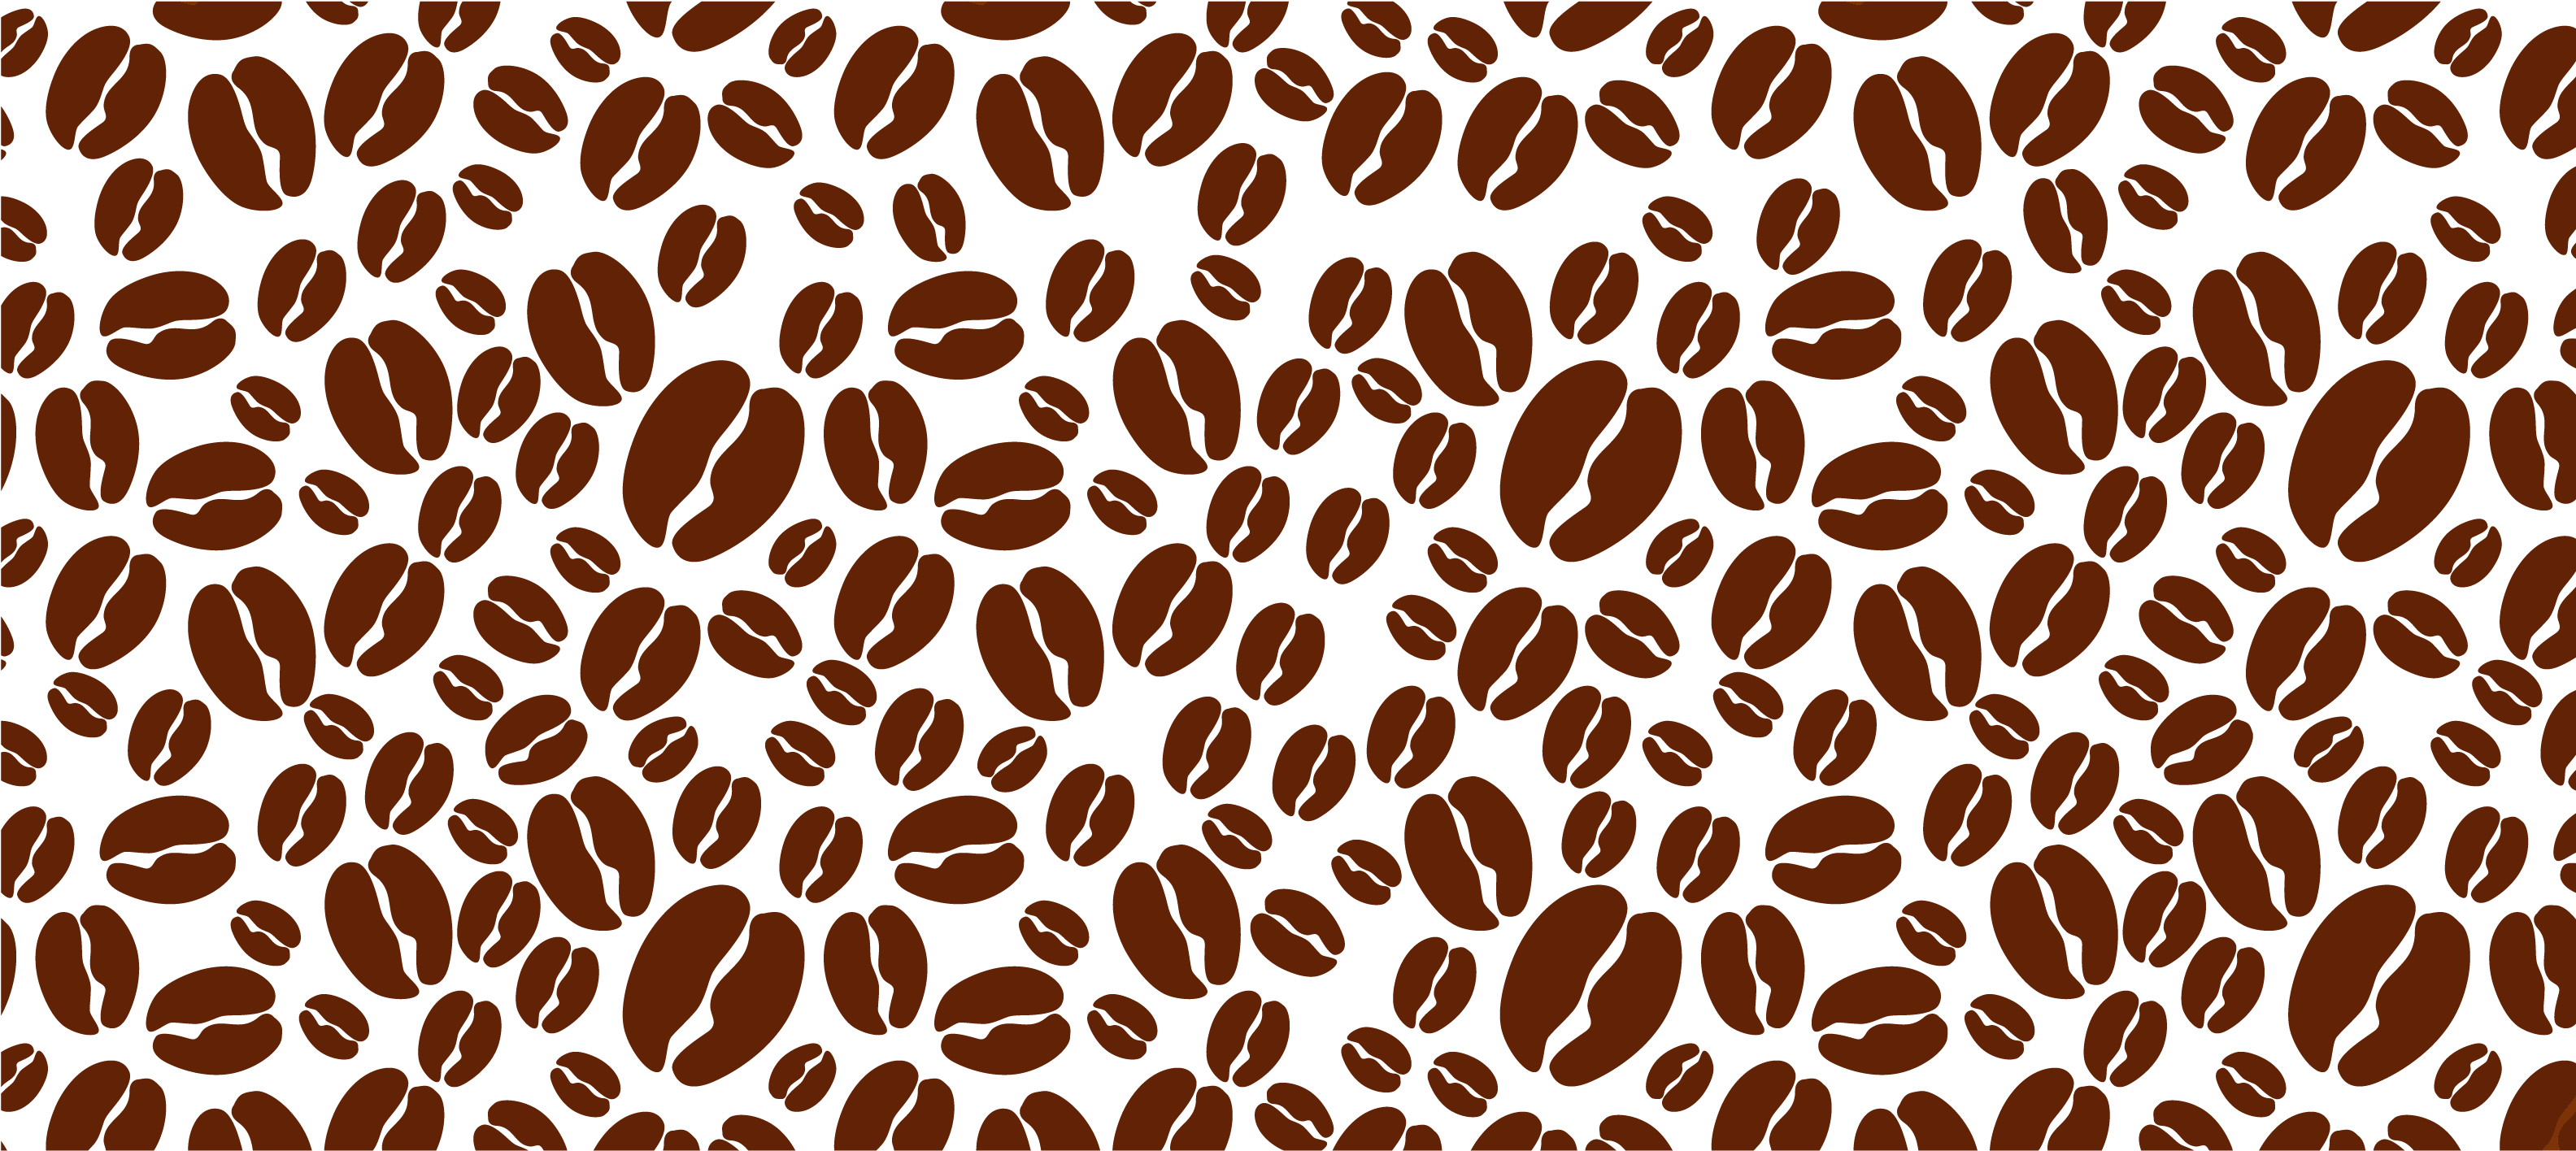 Những hạt cà phê đấy giống như những quả cầu đang xoay tròn, tạo nên một không gian thơ mộng với hương thơm tuyệt vời của cà phê. Hình ảnh này sẽ giúp bạn cảm nhận được chất lượng tuyệt vời của hạt cà phê và không gian độc đáo của chúng.